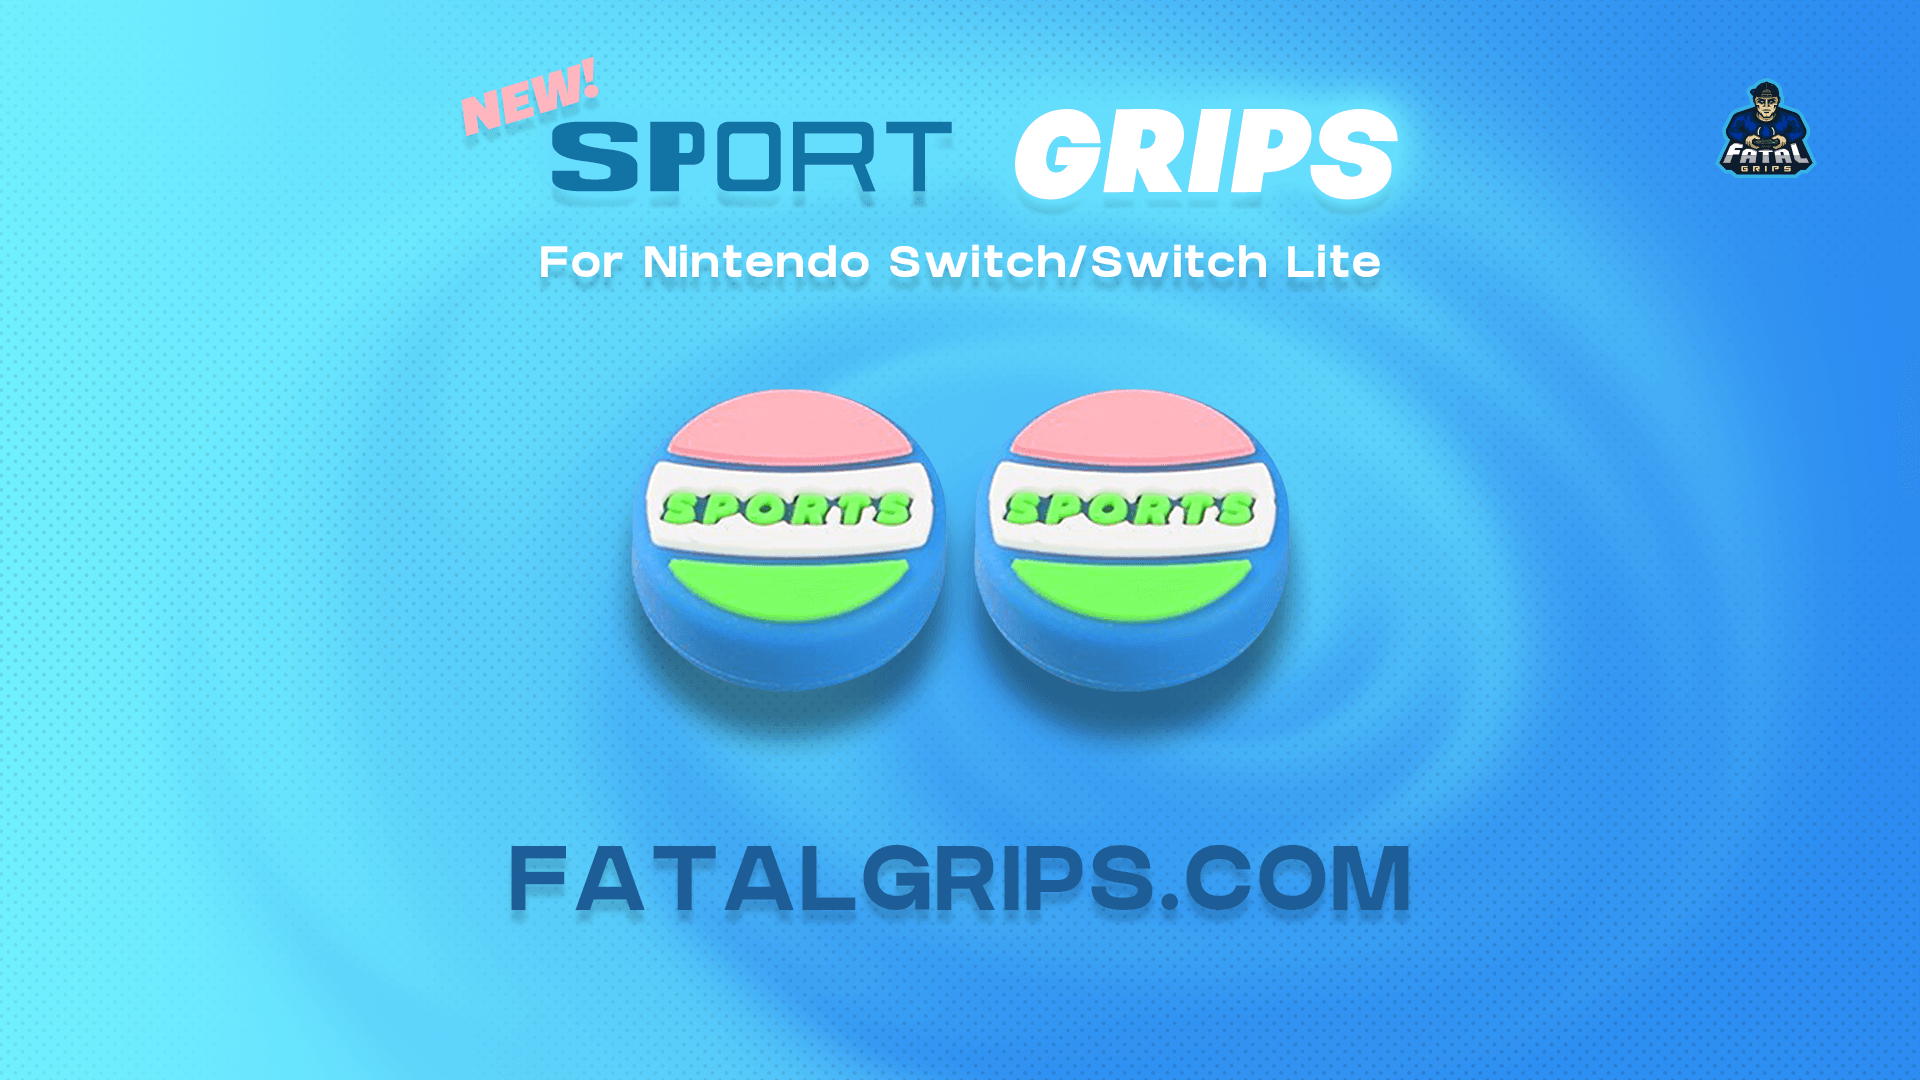 Sport Grips - Fatal Grips